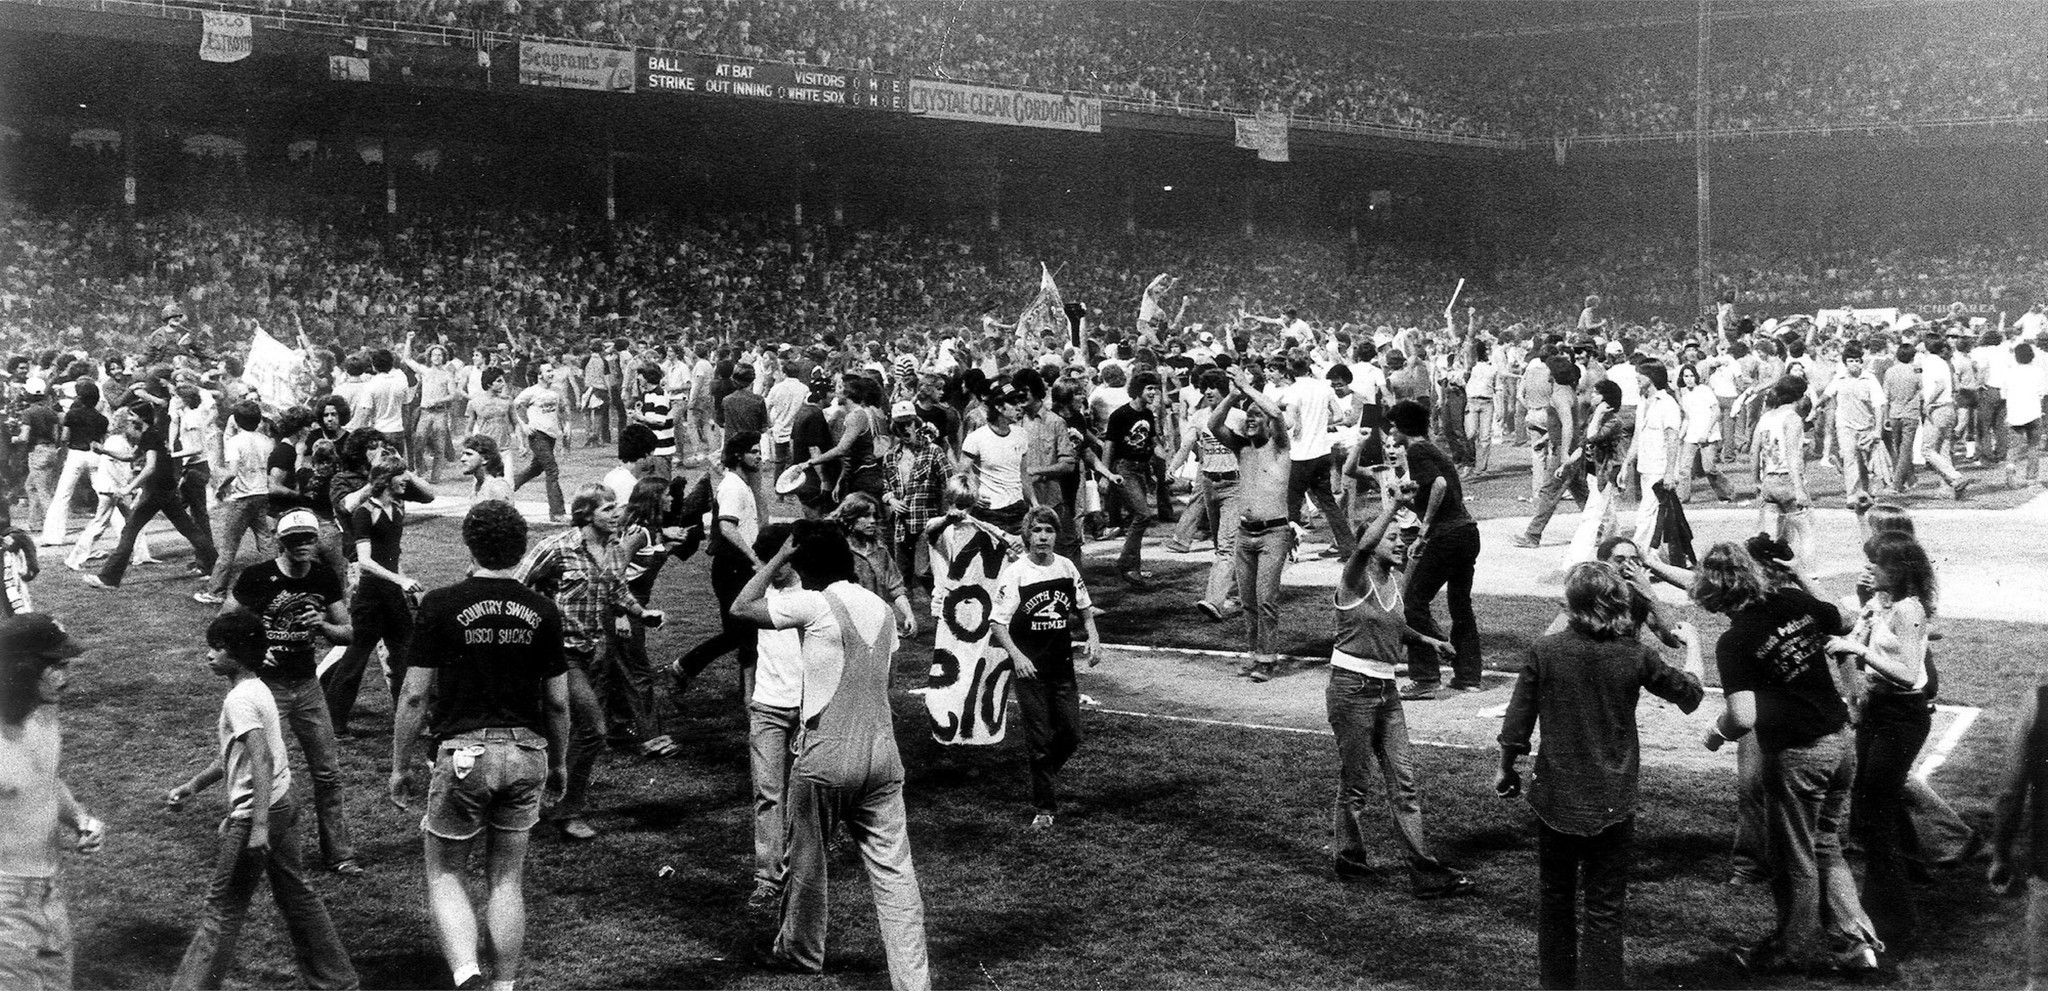 Flashback: July 30, 1979 - South Side Sox